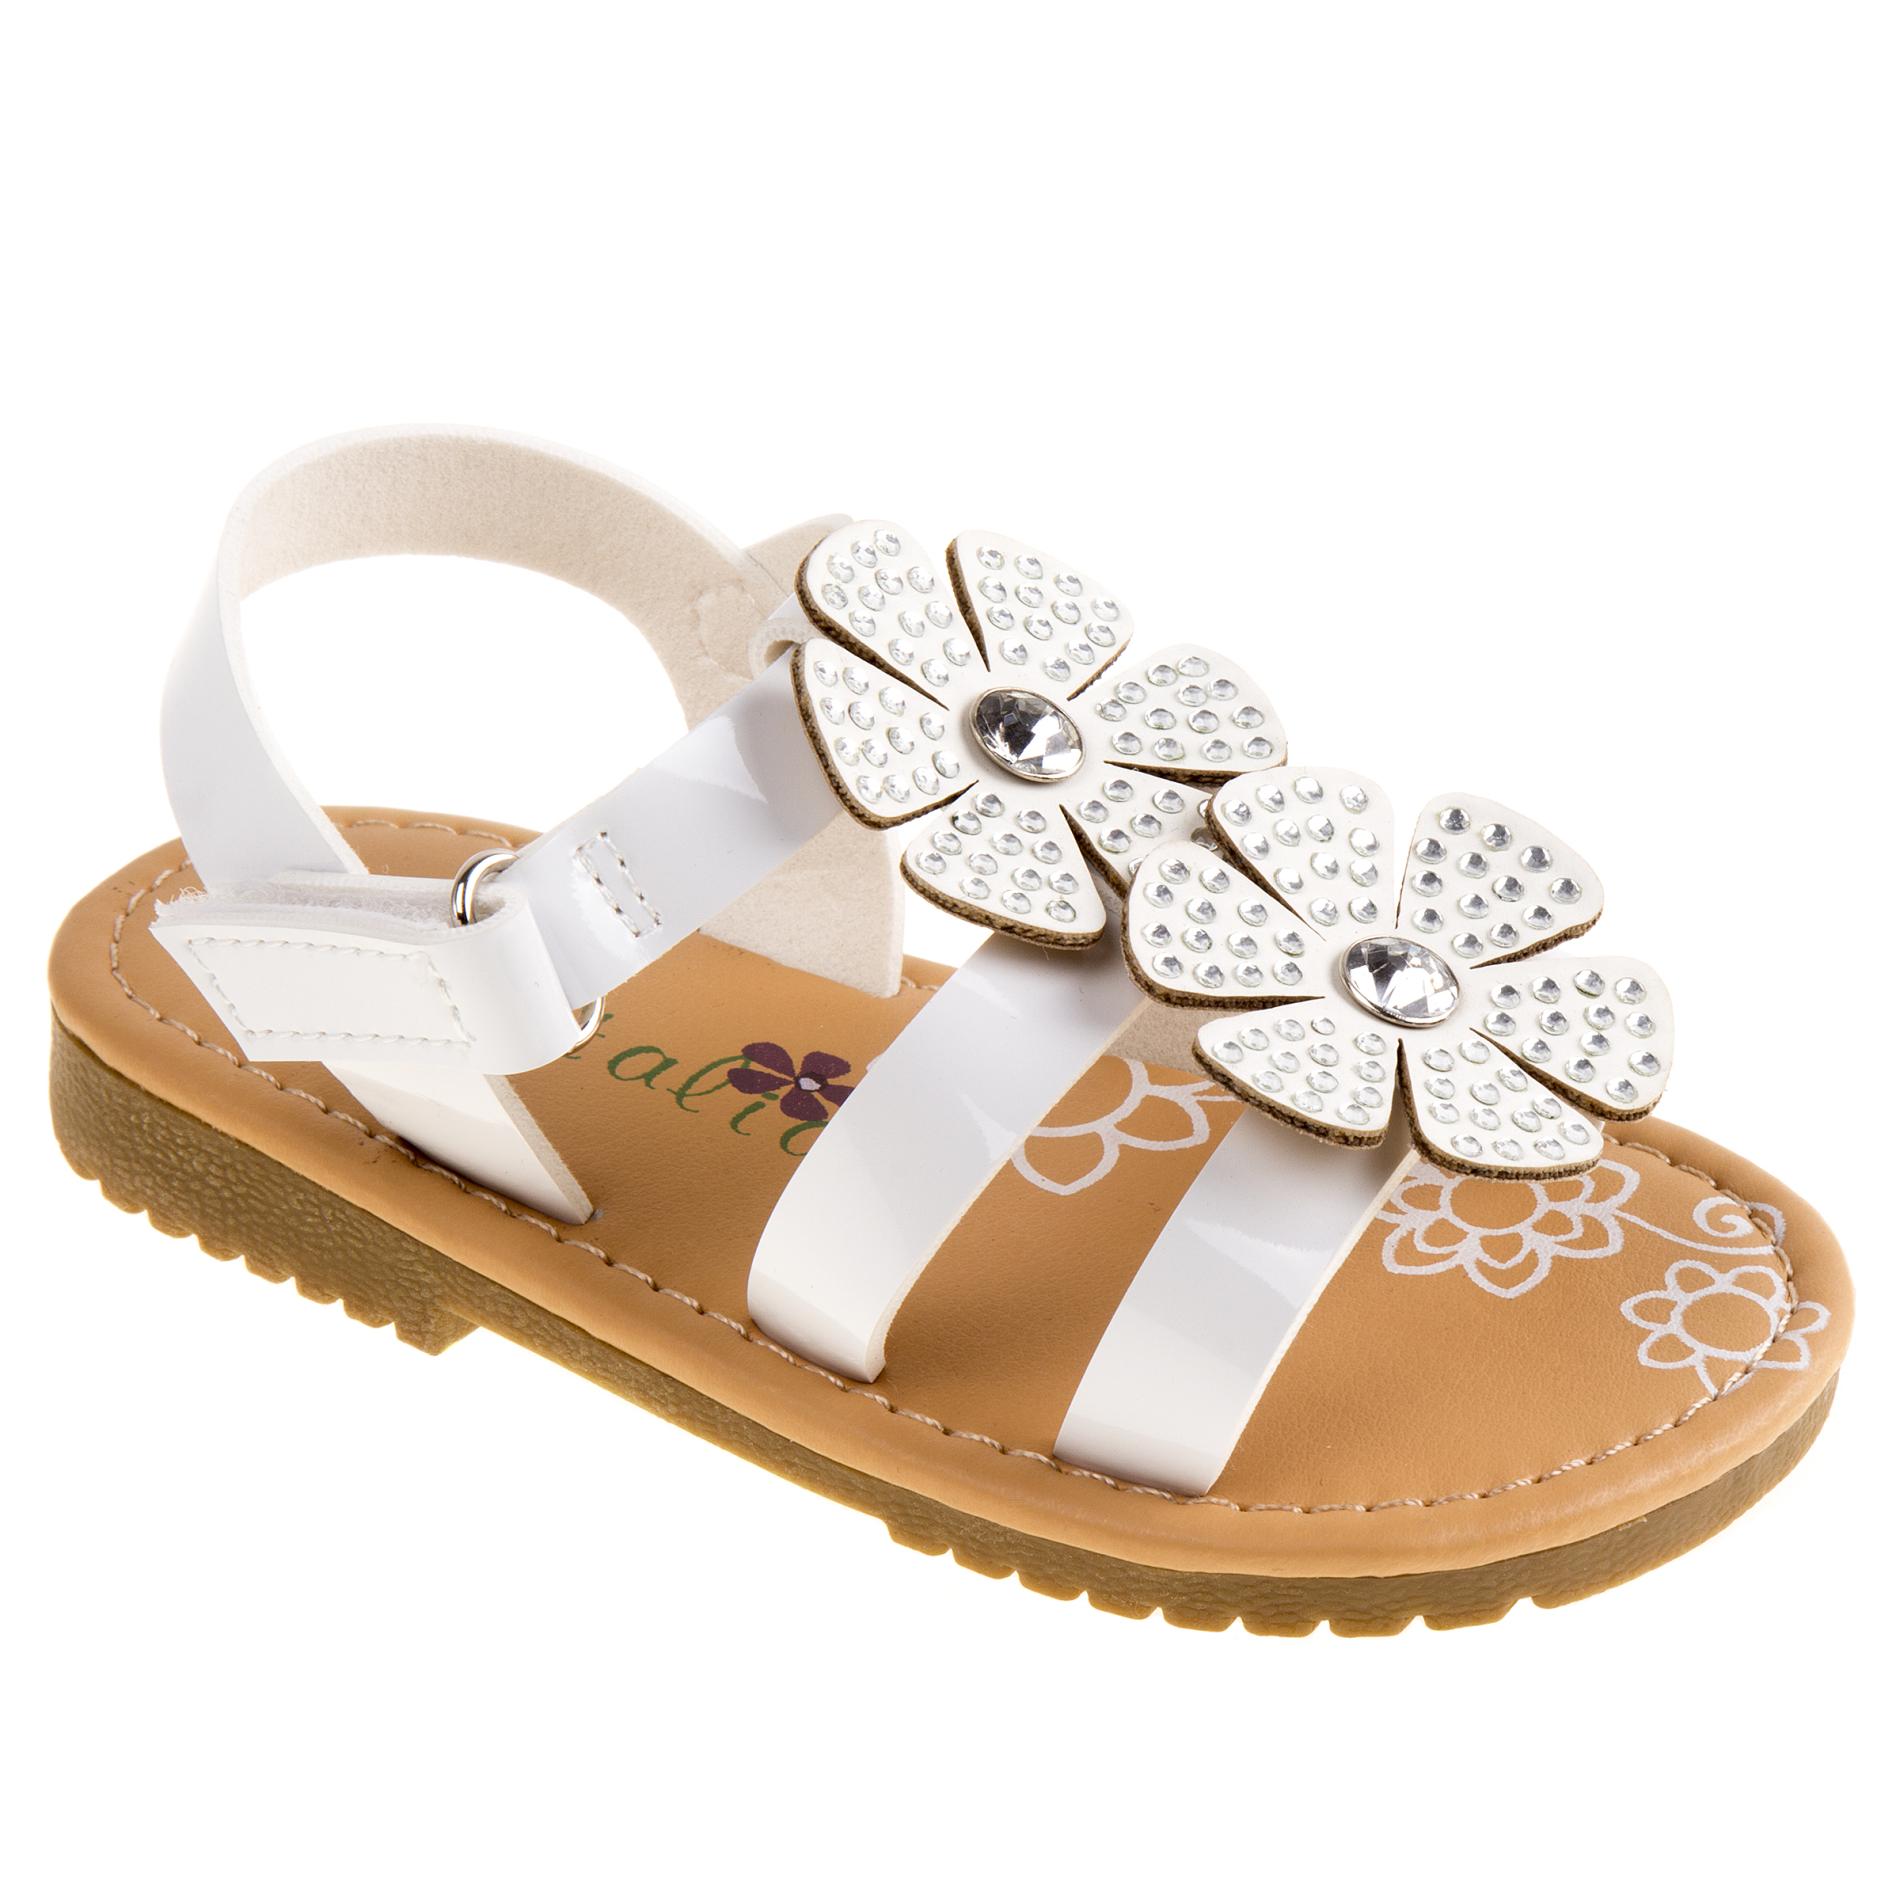 Petalia Toddler Girls' Sandal - White